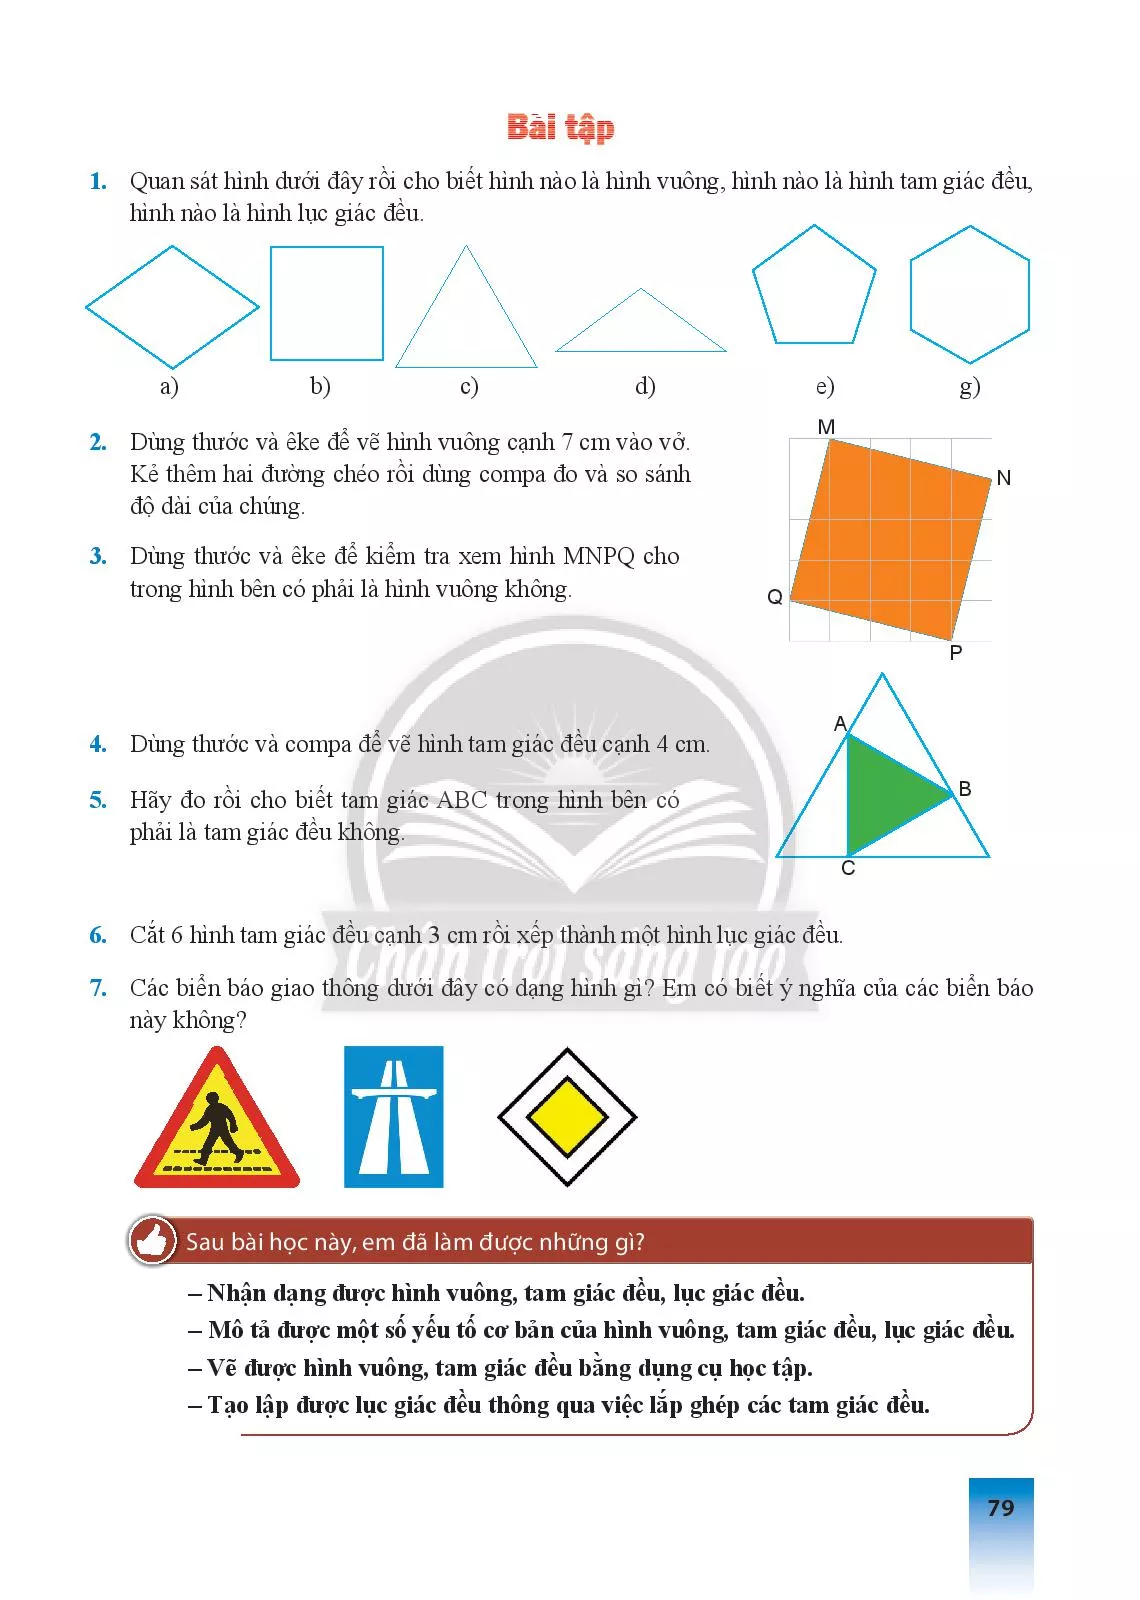 SGK Scan] ✓ Bài 1. Hình vuông - Tam giác đều - Lục giác đều ...